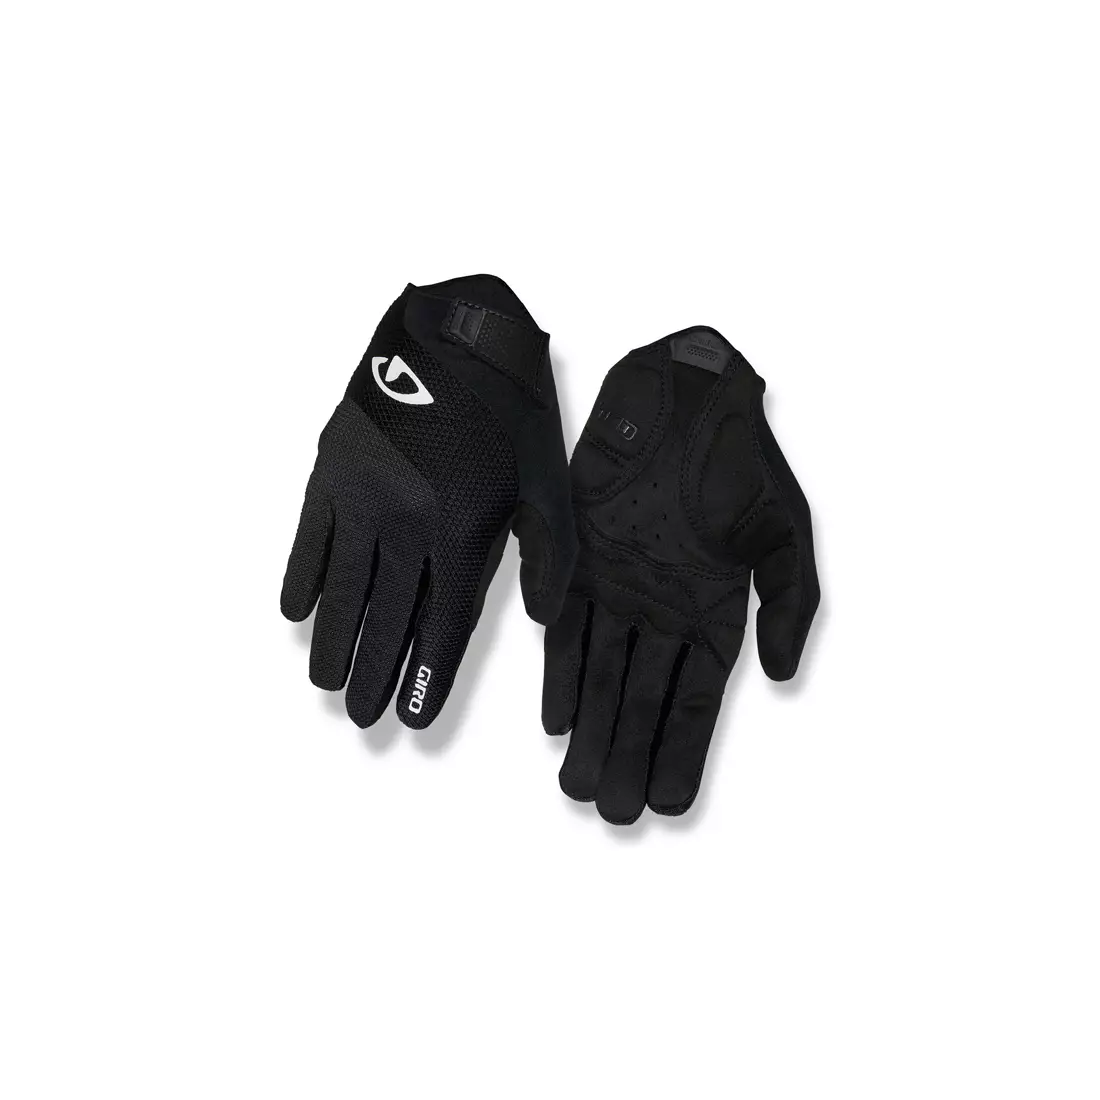 GIRO ladies' bicycle gloves tessa gel lf black GR-7085719